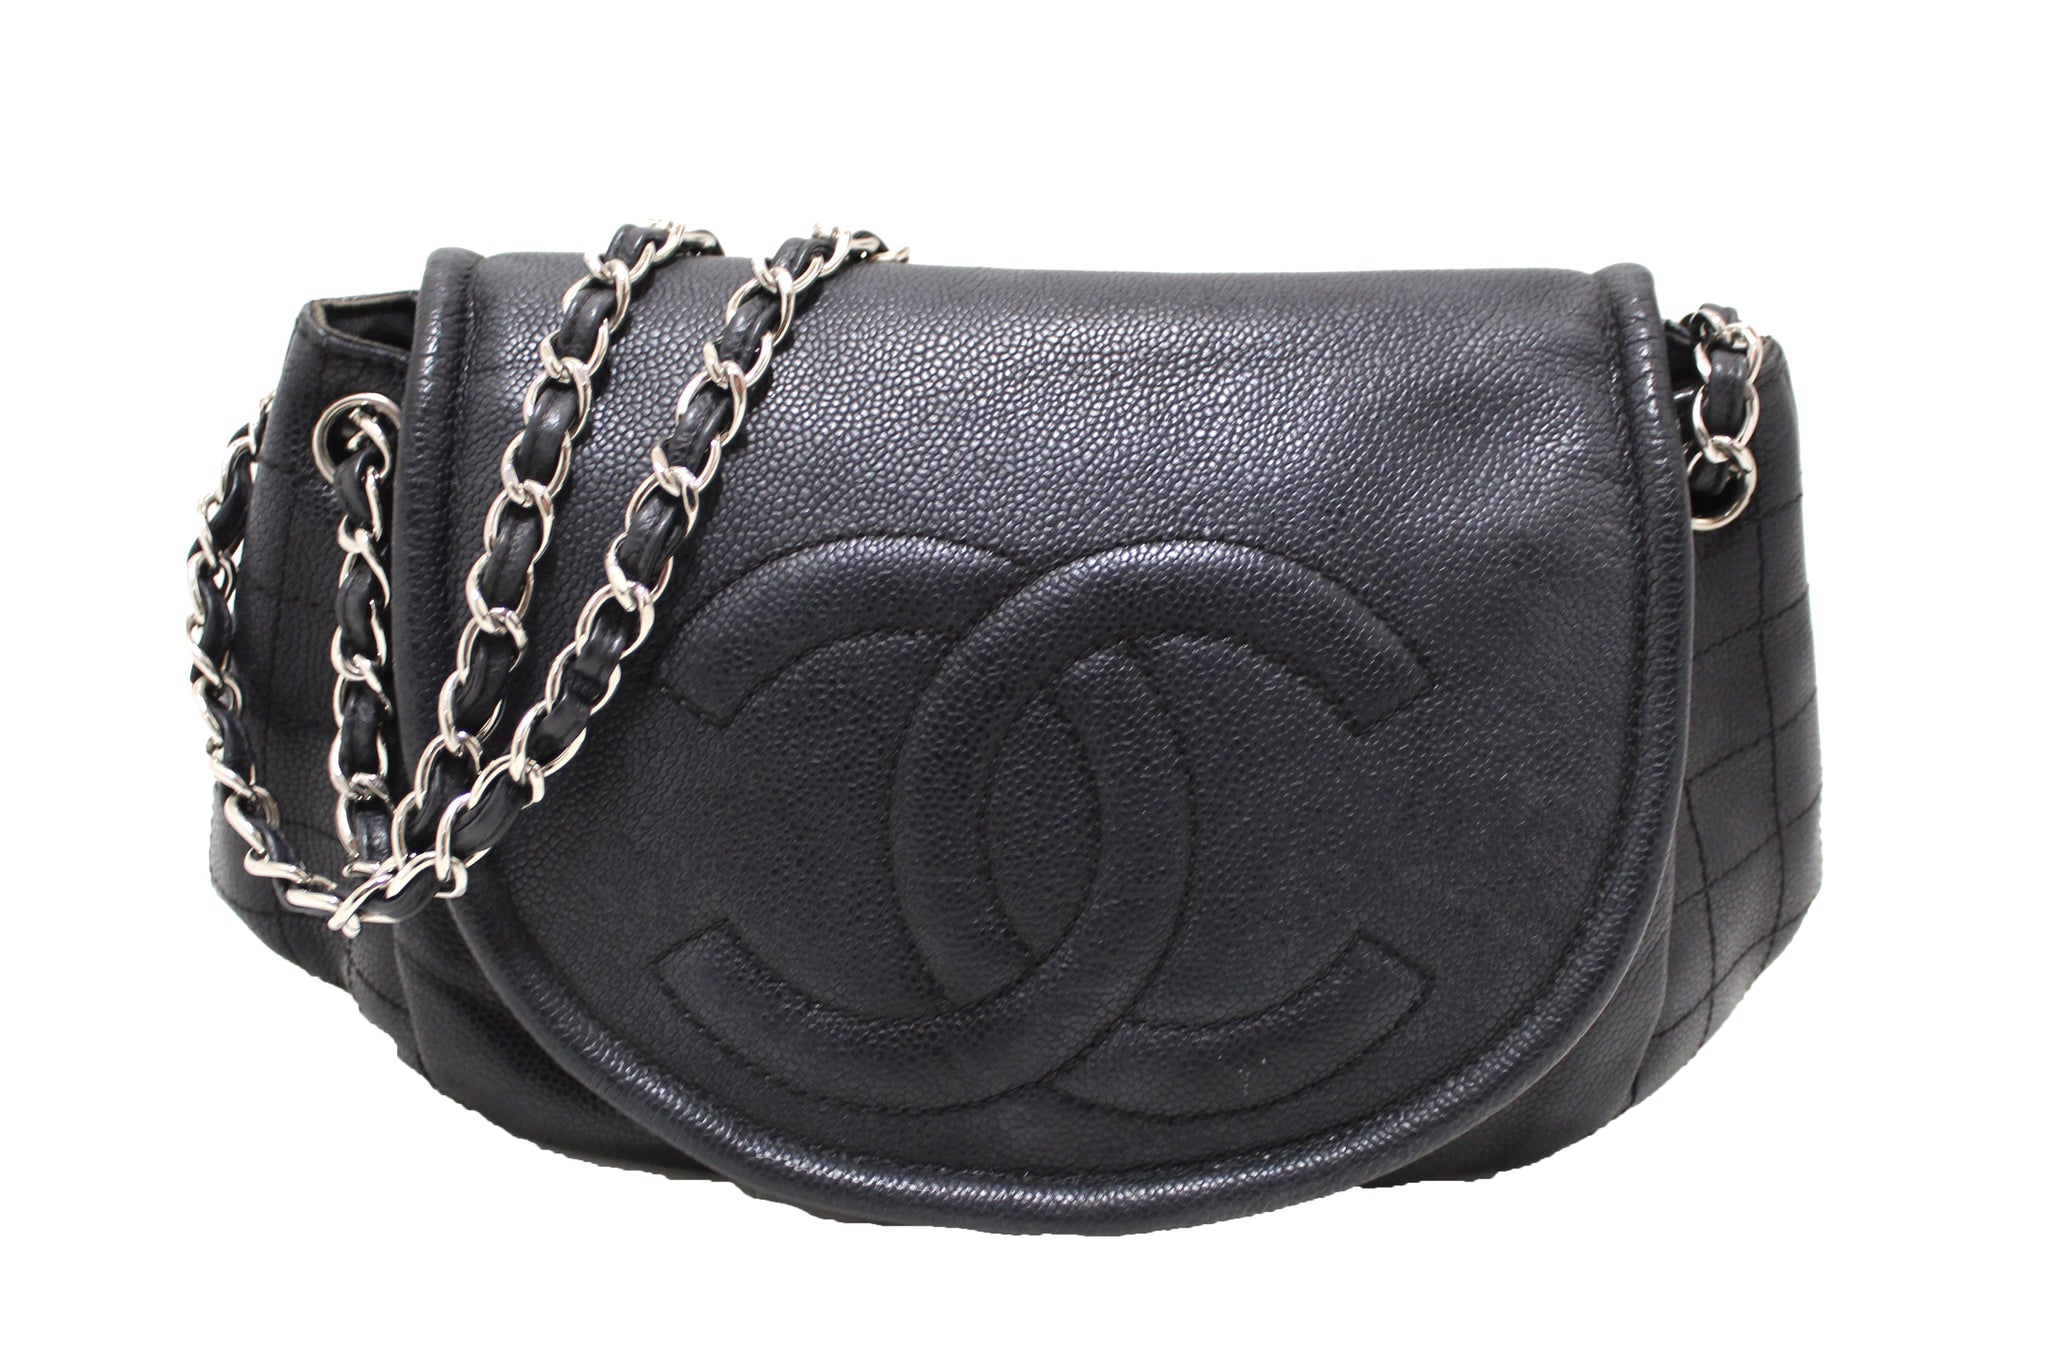 Chanel Half Moon - 27 For Sale on 1stDibs  chanel half moon woc, chanel  half moon flap bag, chanel half moon bag